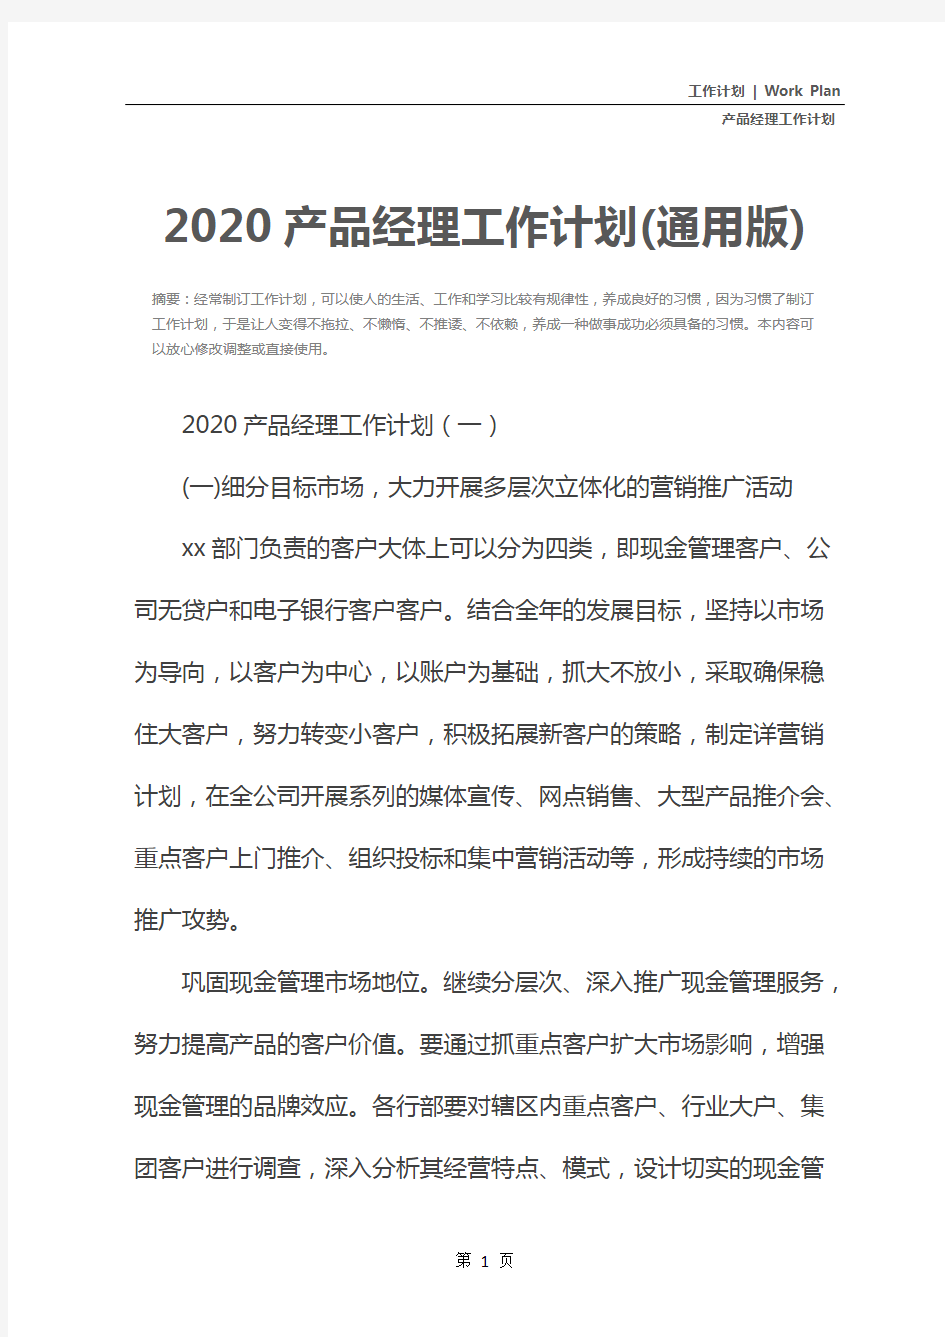 2020产品经理工作计划(通用版)